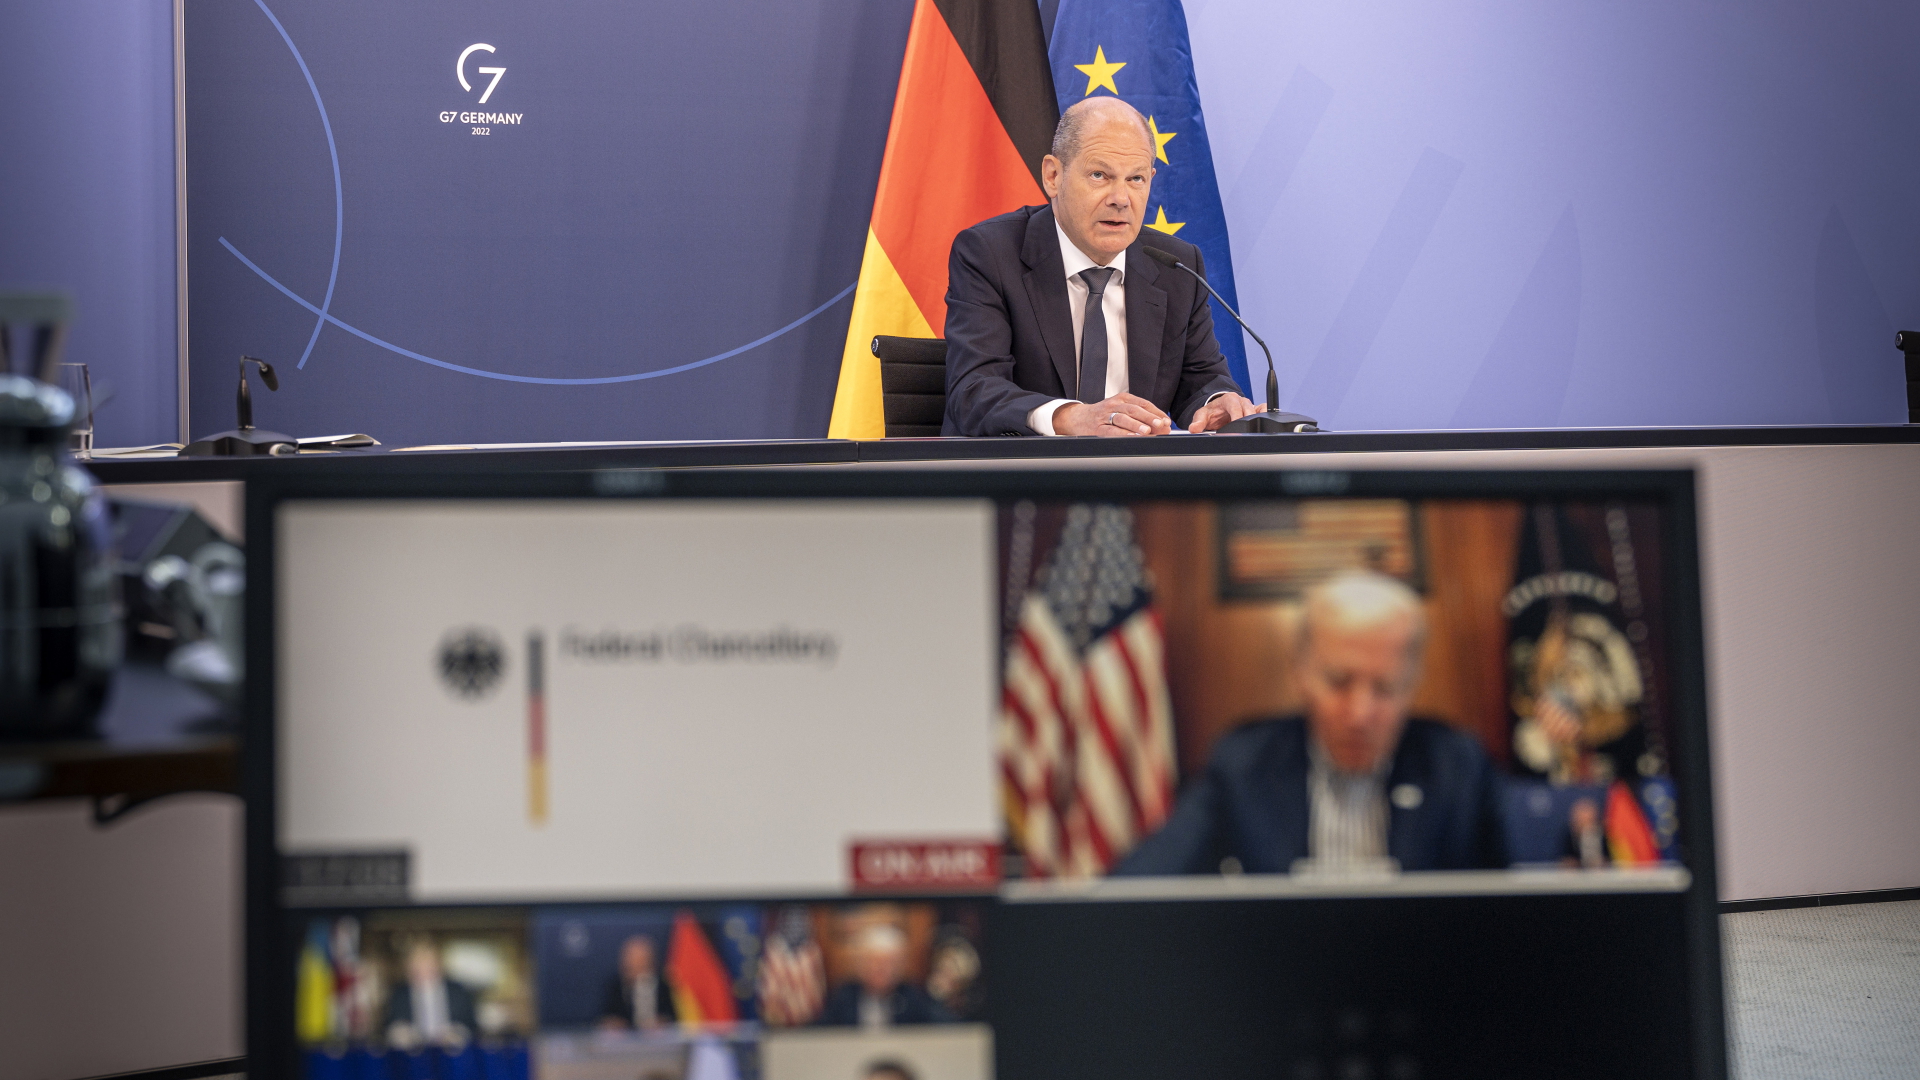 Olaf Scholz nimmt an einer Videokonferenz im Rahmen der G7 mit den Staats- und Regierungschefs der USA, Großbritannien, Frankreich, Italien, Japan, der EU und Kanada sowie der Ukraine teil. | dpa